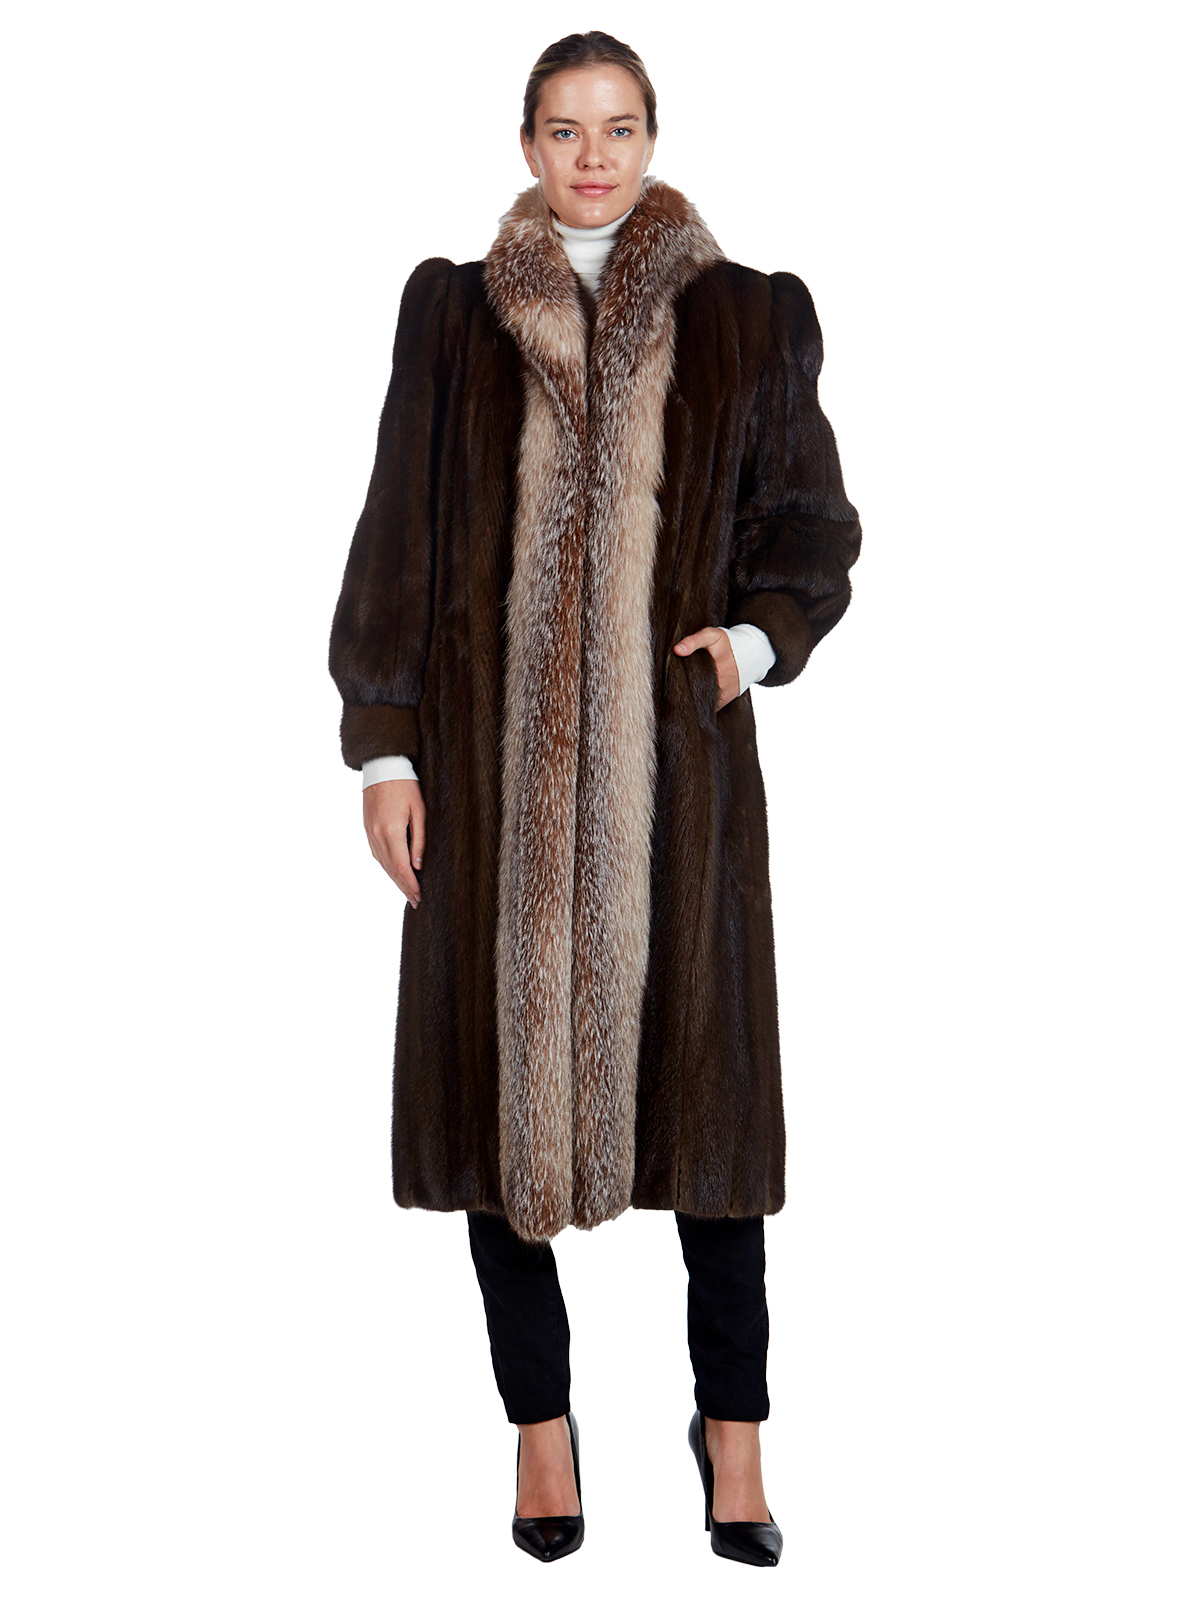 Mahogany Mink Fur Coat - Women's Fur Coat - Large | Estate Furs